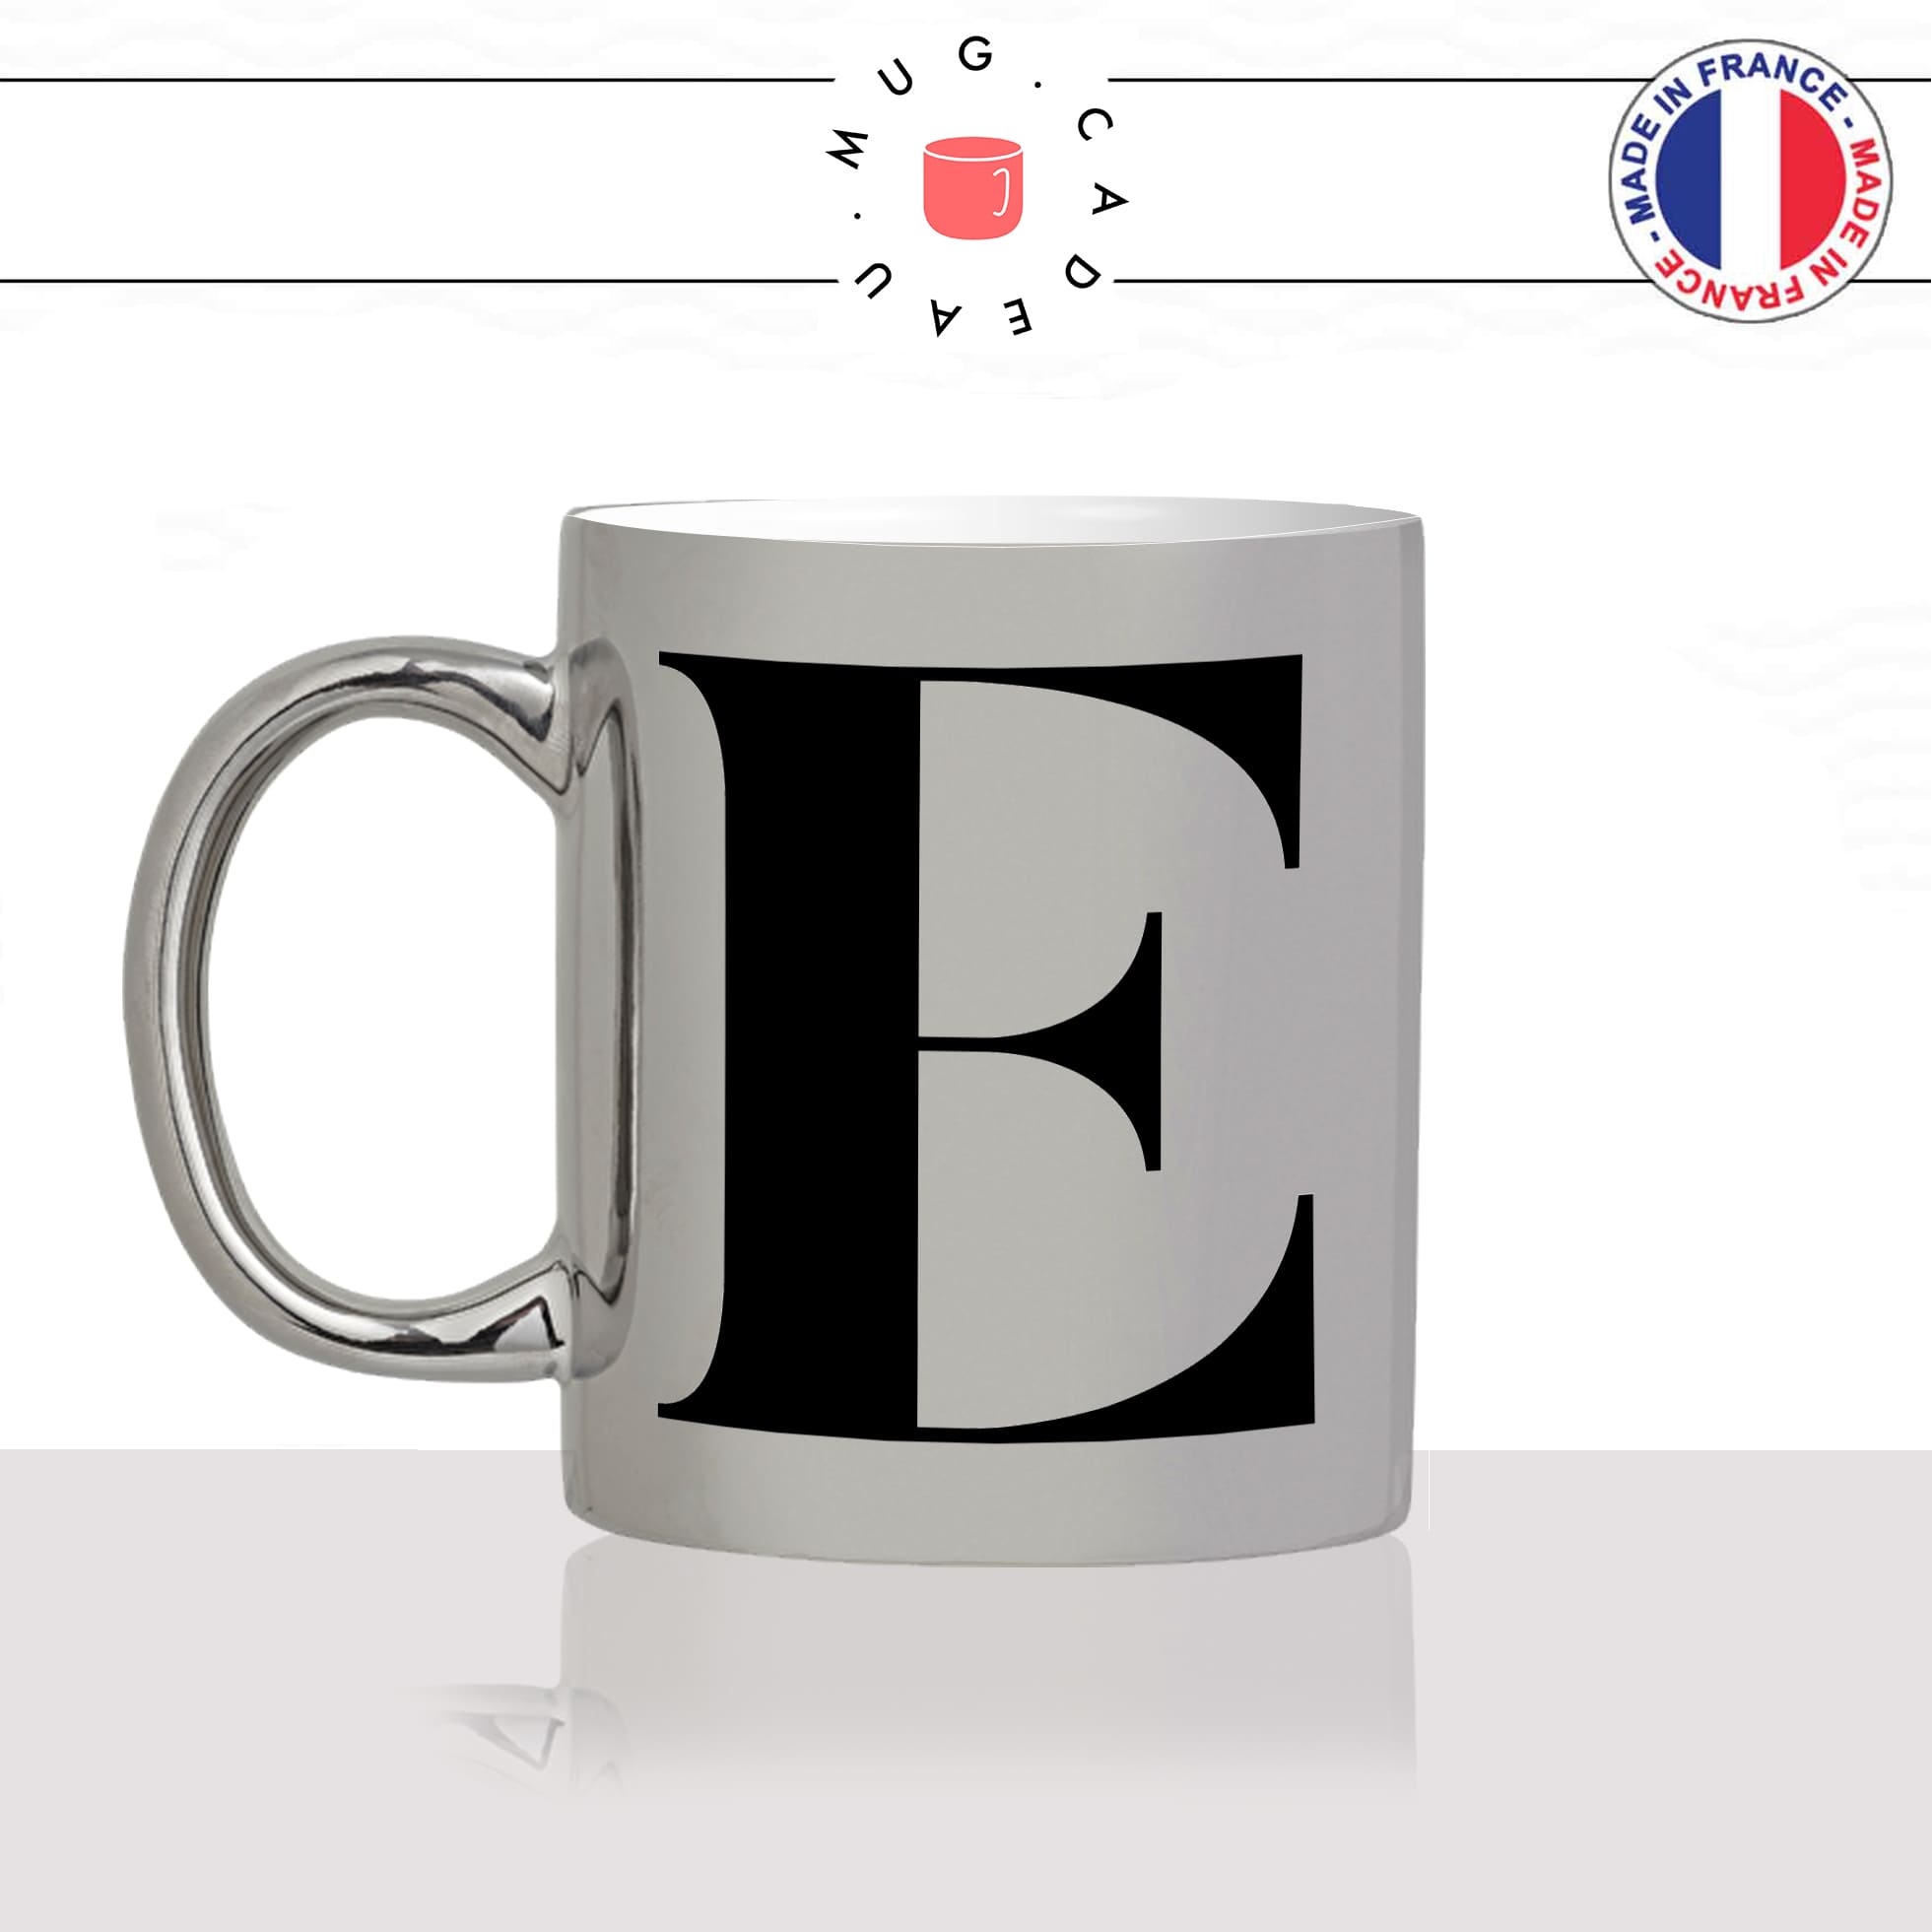 mug-tasse-argent-argenté-silver-initiale-E-Emanuelle-eric-erika-minuscule-majuscule-lettre-collegue-original-idée-cadeau-fun-cool-café-thé